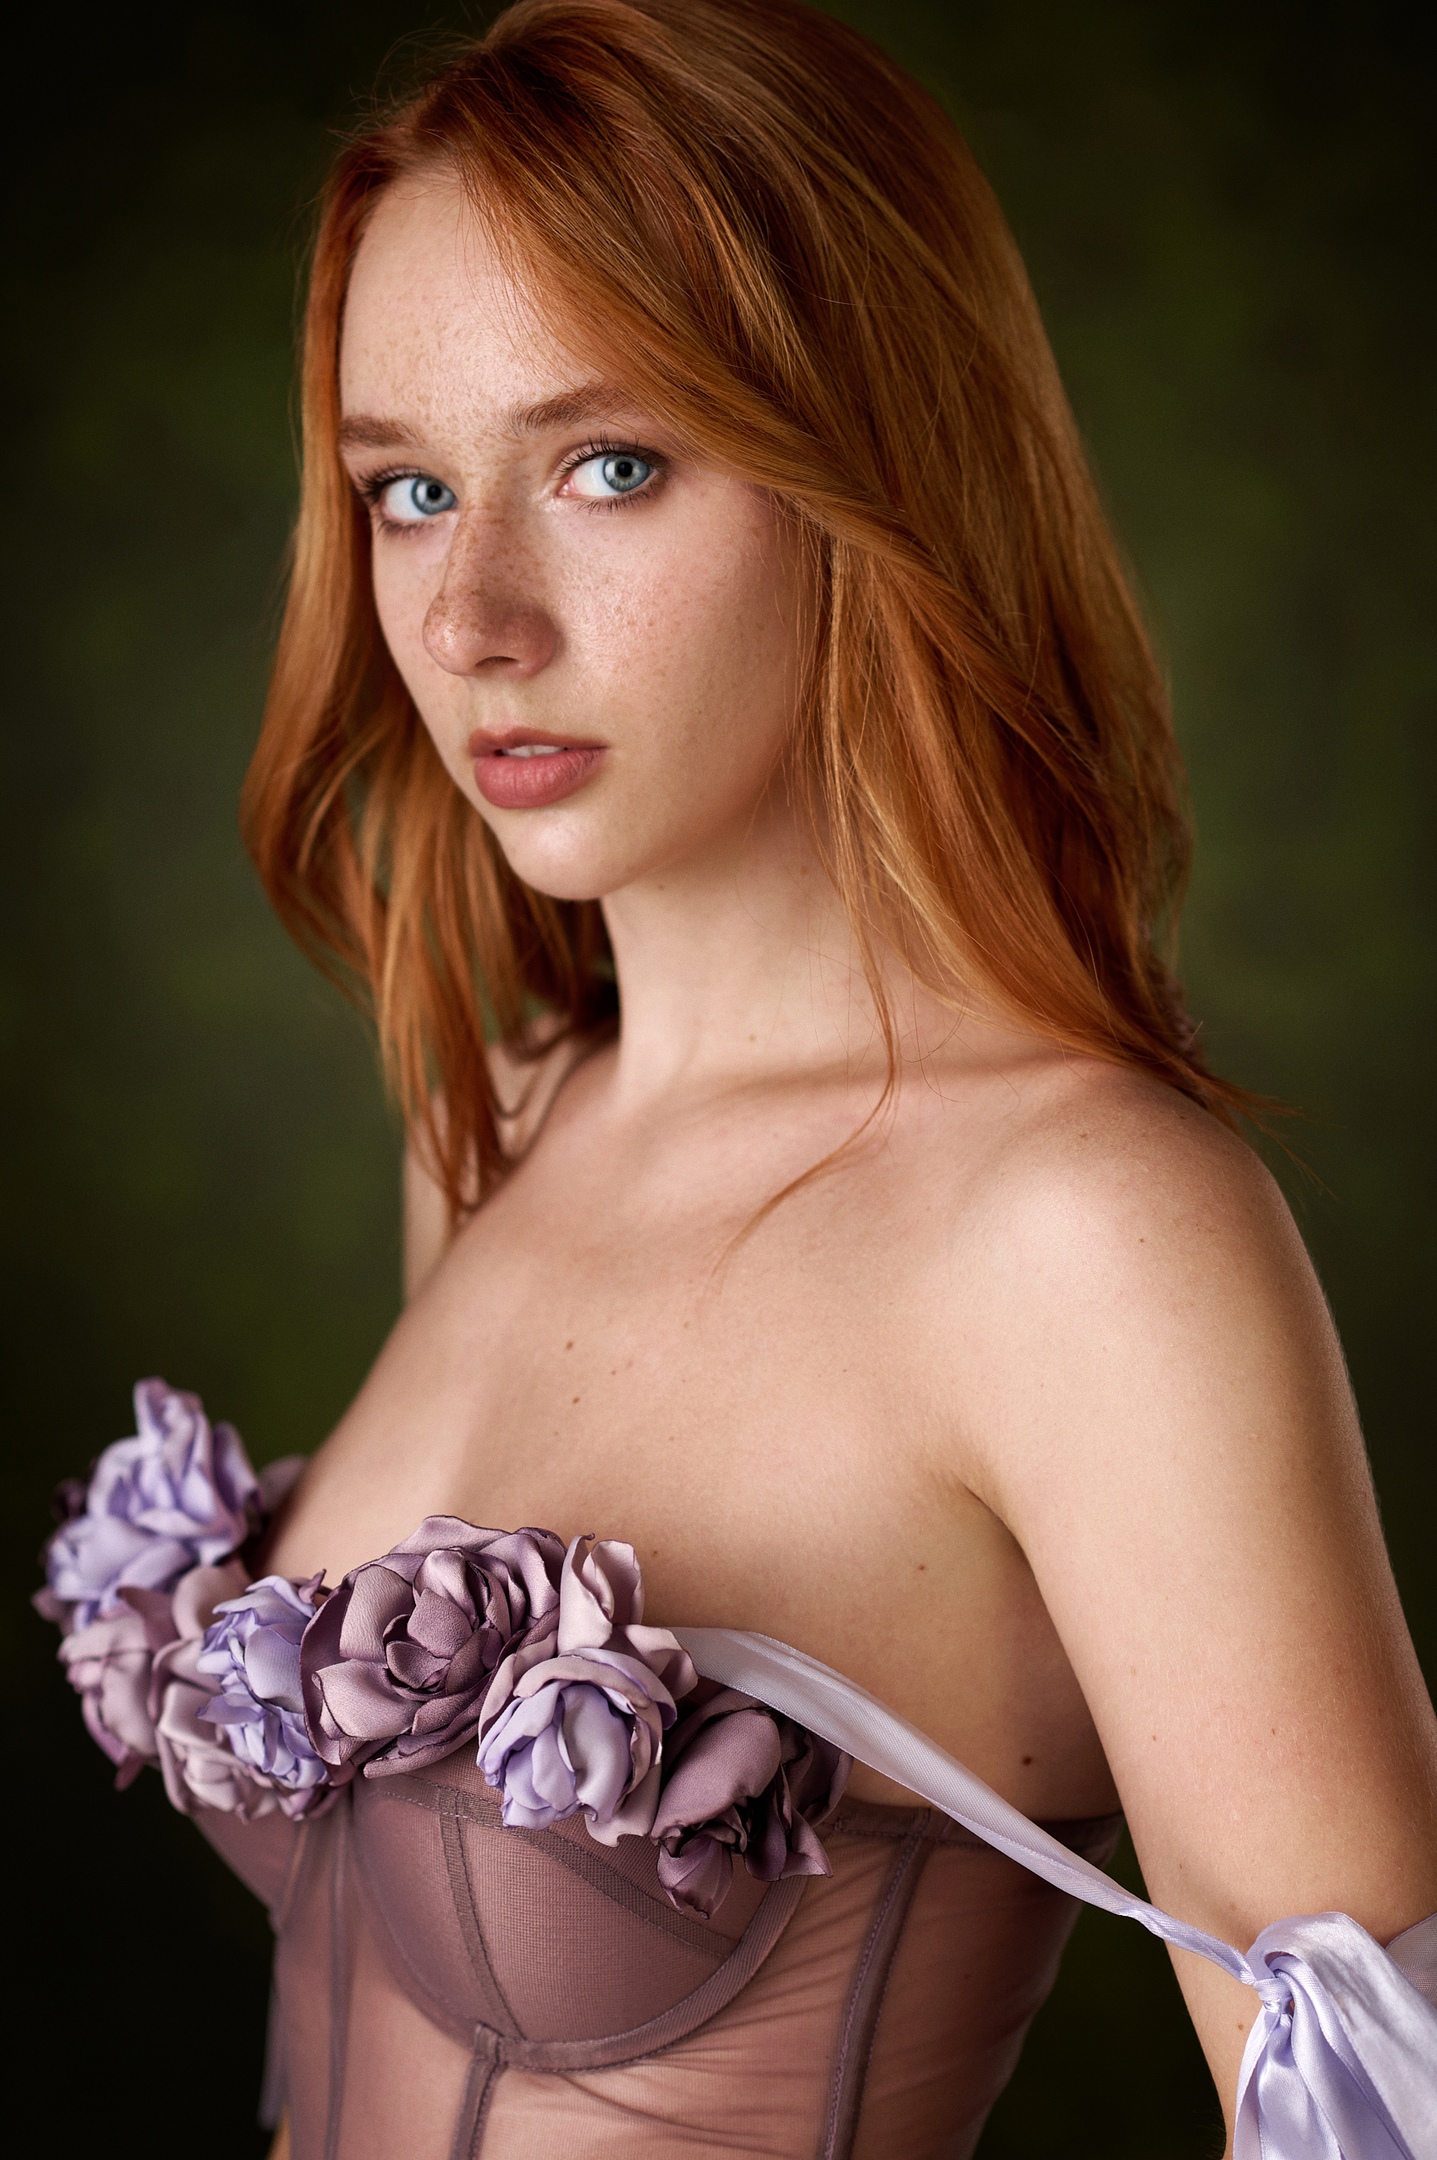 Max Pyzhik Women Redhead Blue Eyes Freckles Bare Shoulders Dress Portrait Simple Background 1437x2160